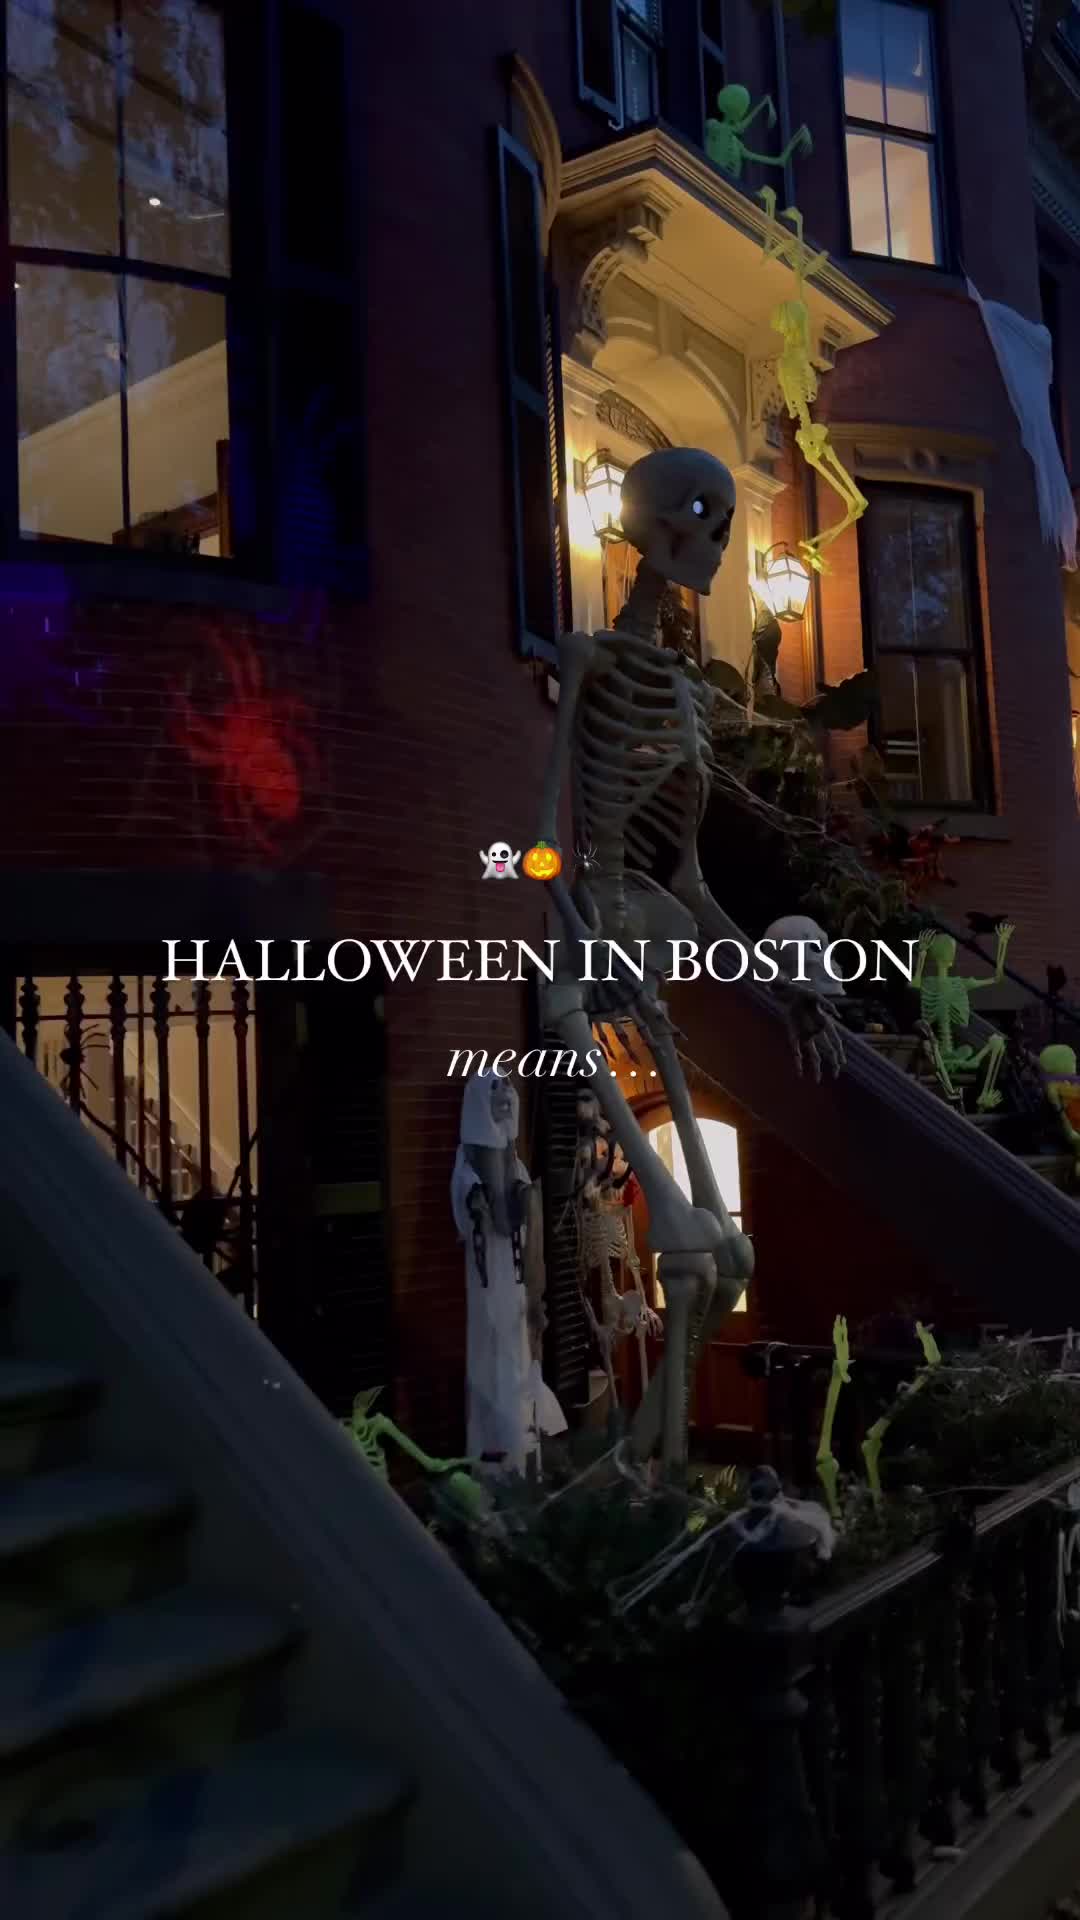 Halloween Fun in Boston - Spooky Sights & Festivities 🎃